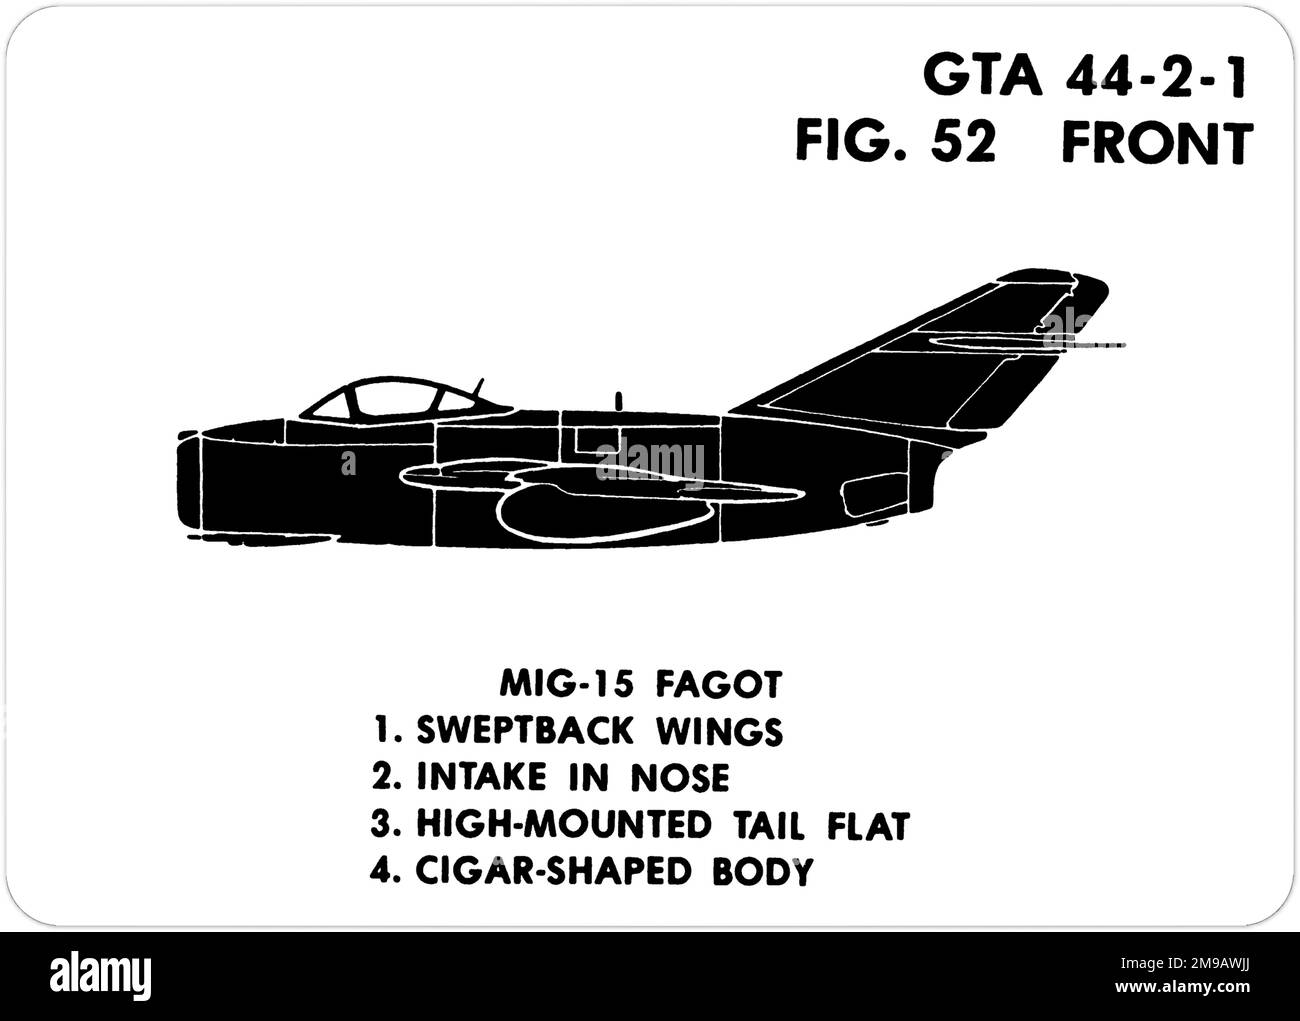 Mikoyan-Guryevich MiG-15 (nombre en clave de la OTAN: Fagot). Esta es una de las series de ayudas de entrenamiento gráfico (GTA) utilizadas por el ejército de los Estados Unidos para entrenar a su personal para reconocer aviones amistosos y hostiles. Este conjunto en particular, GTA 44-2-1, fue publicado en July1977. El set cuenta con aviones de: Canadá, Italia, Reino Unido, Estados Unidos y la URSS. Foto de stock